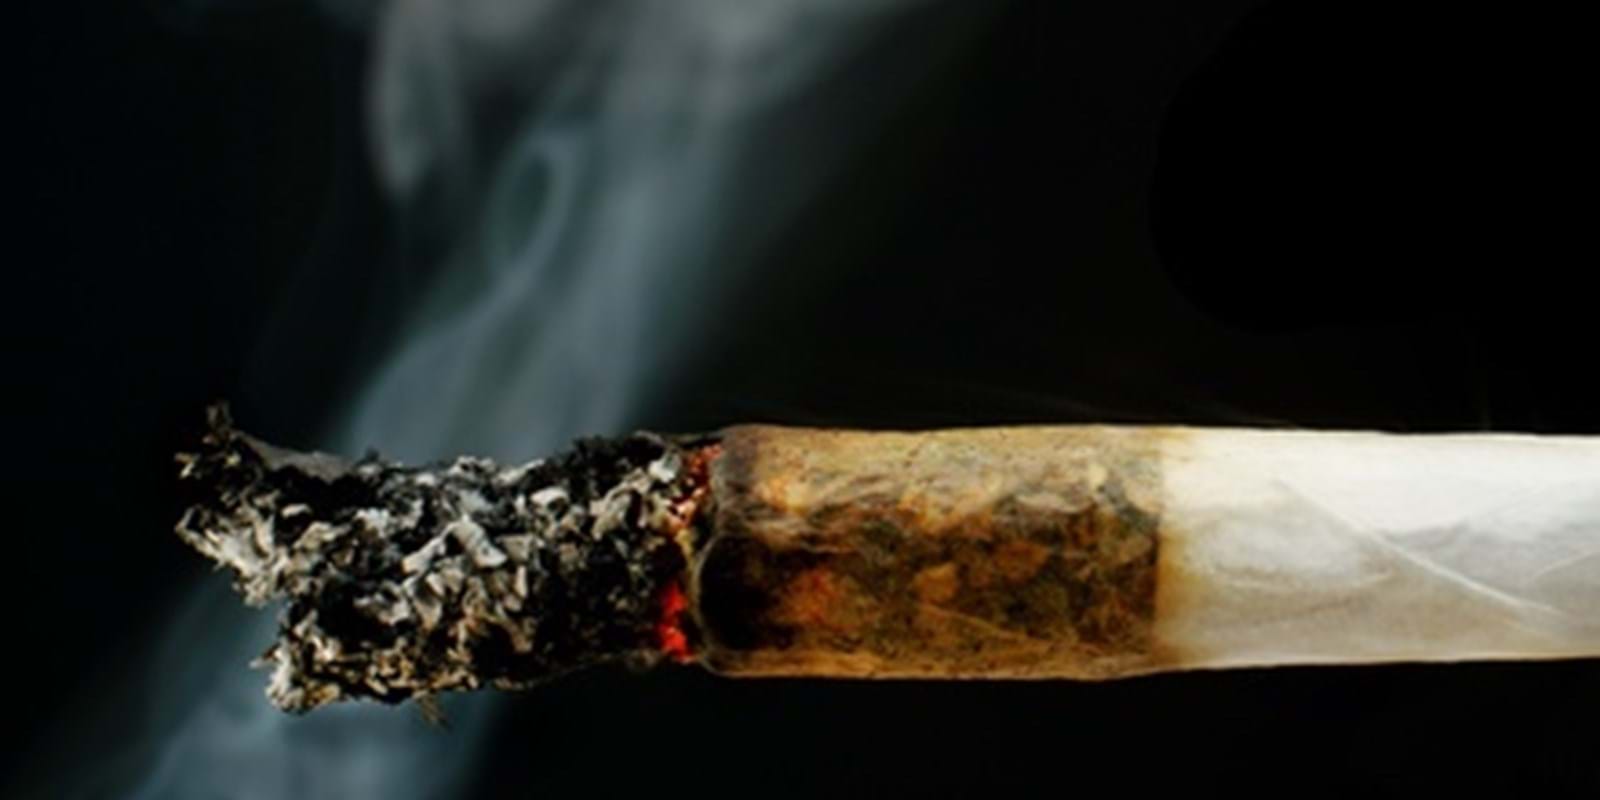 Le tribunal du logement résilie le bail d’une locataire qui ne respecte pas une interdiction de fumer dans le logement